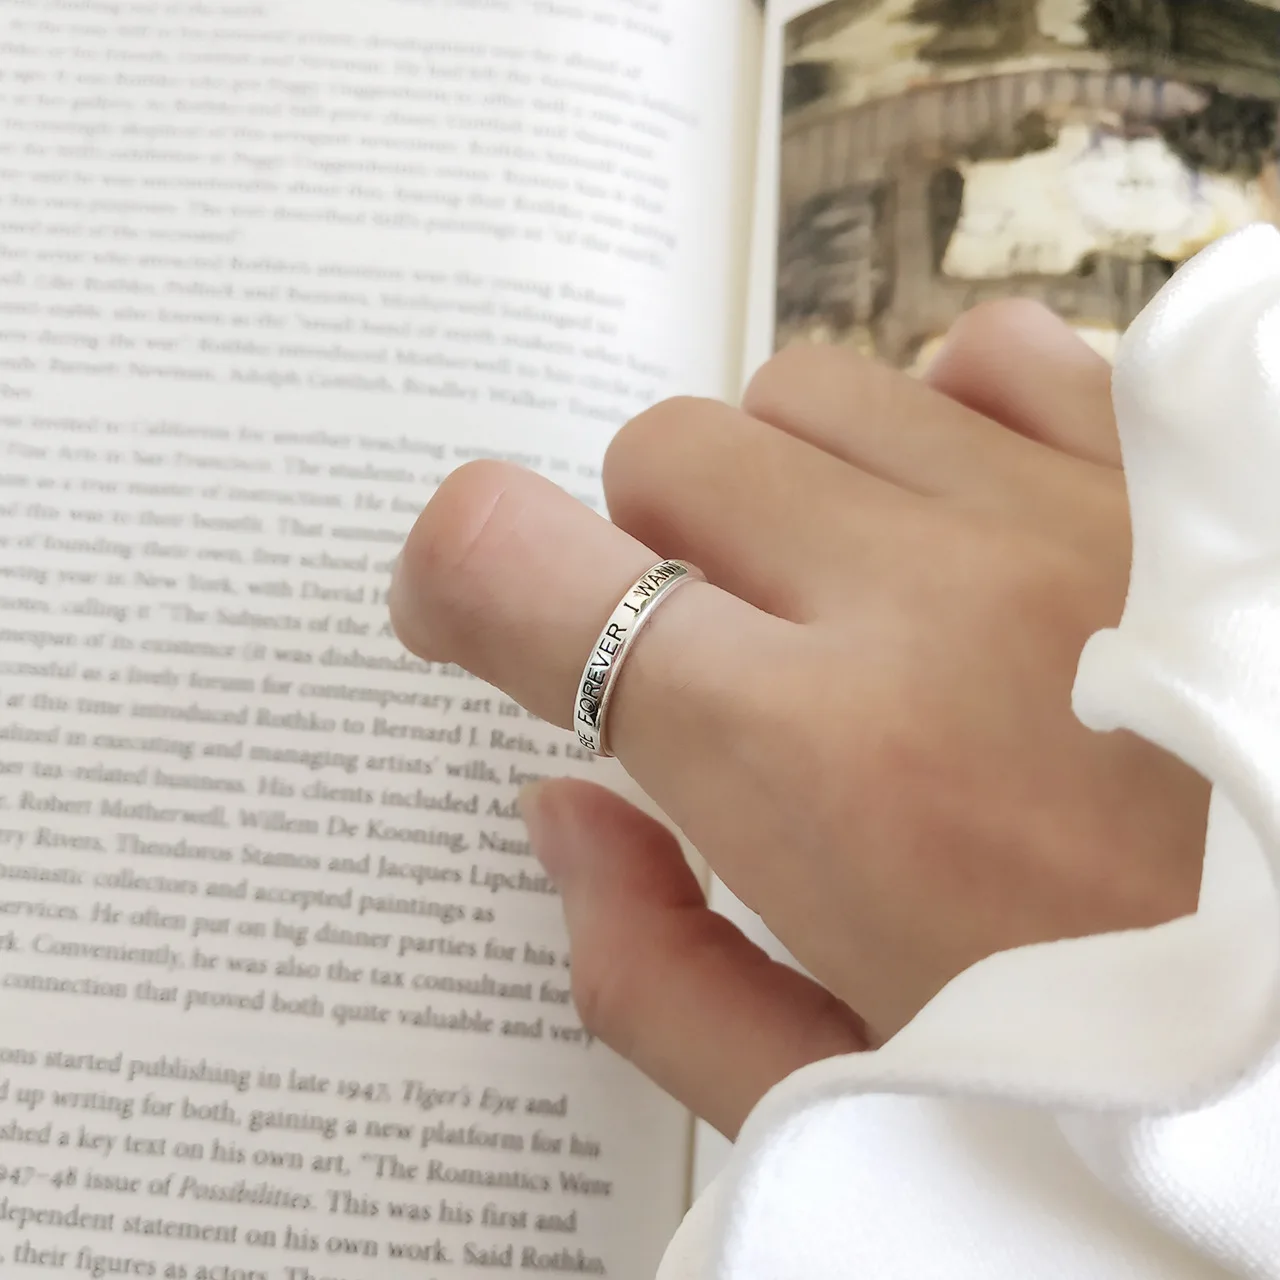 Kinel S925 стерлингового серебра ювелирные изделия простое кольцо личности украшения хипстера Двухслойное кольцо Ретро дизайн bamboo раздел диких